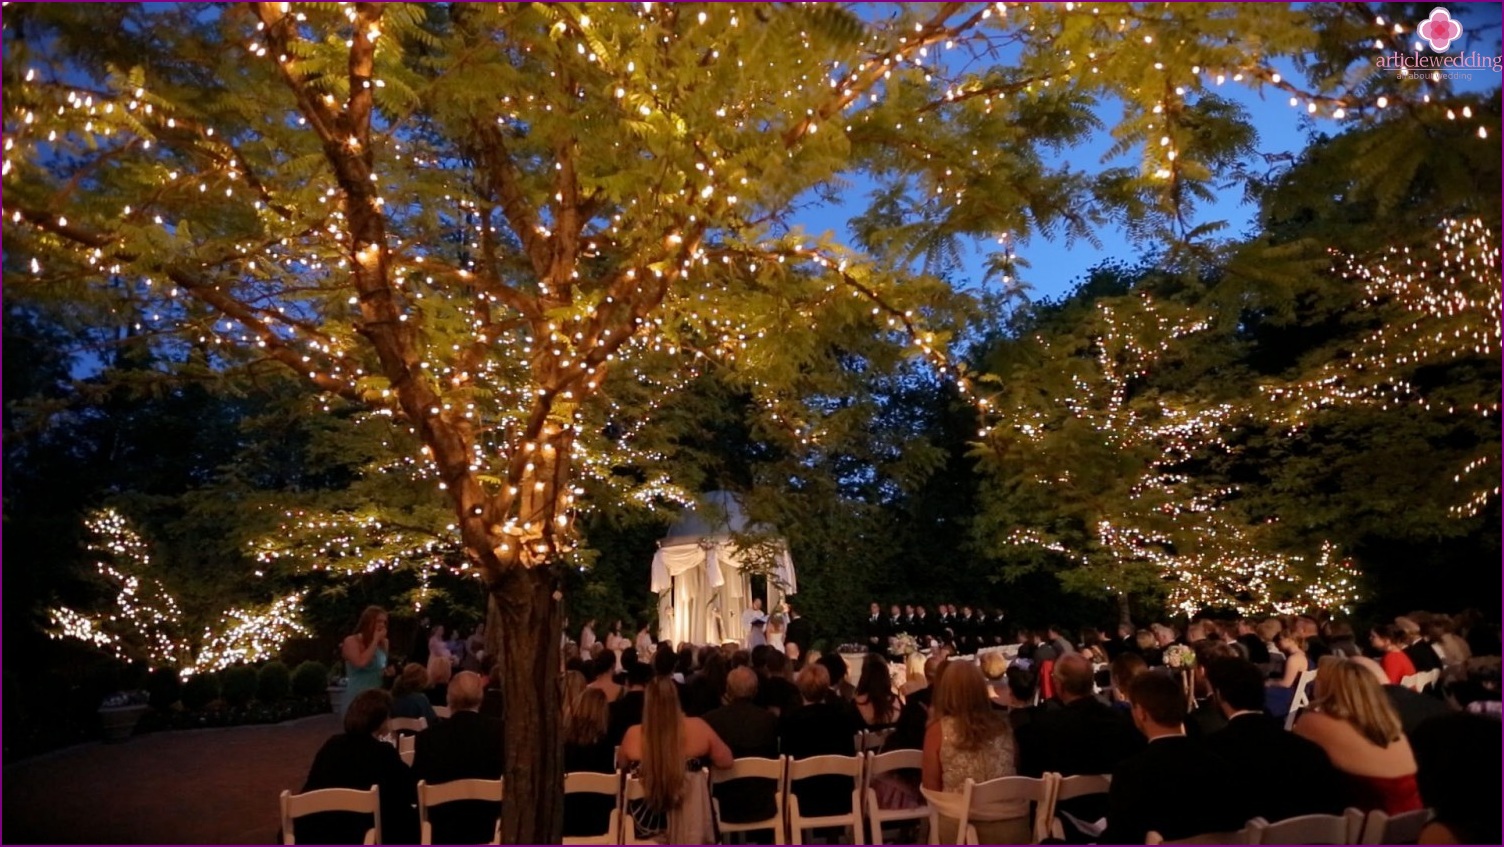 Fák megvilágítása esküvői világításként